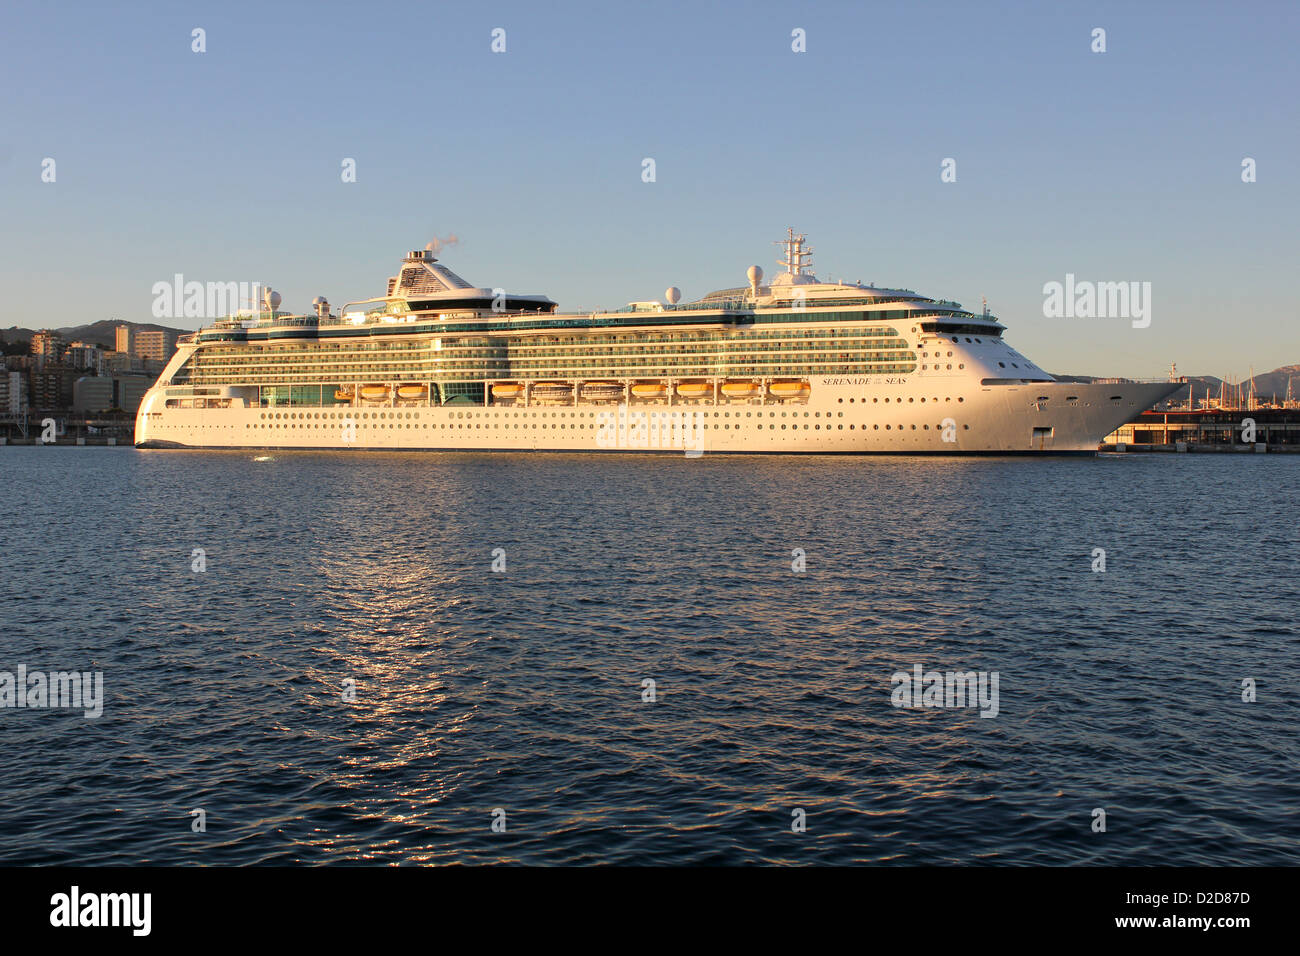 Royal Caribbean International Cruise Ship 'Serenade of the Seas' - leaving berth at late afternoon - Port of Palma de Mallorca. Stock Photo